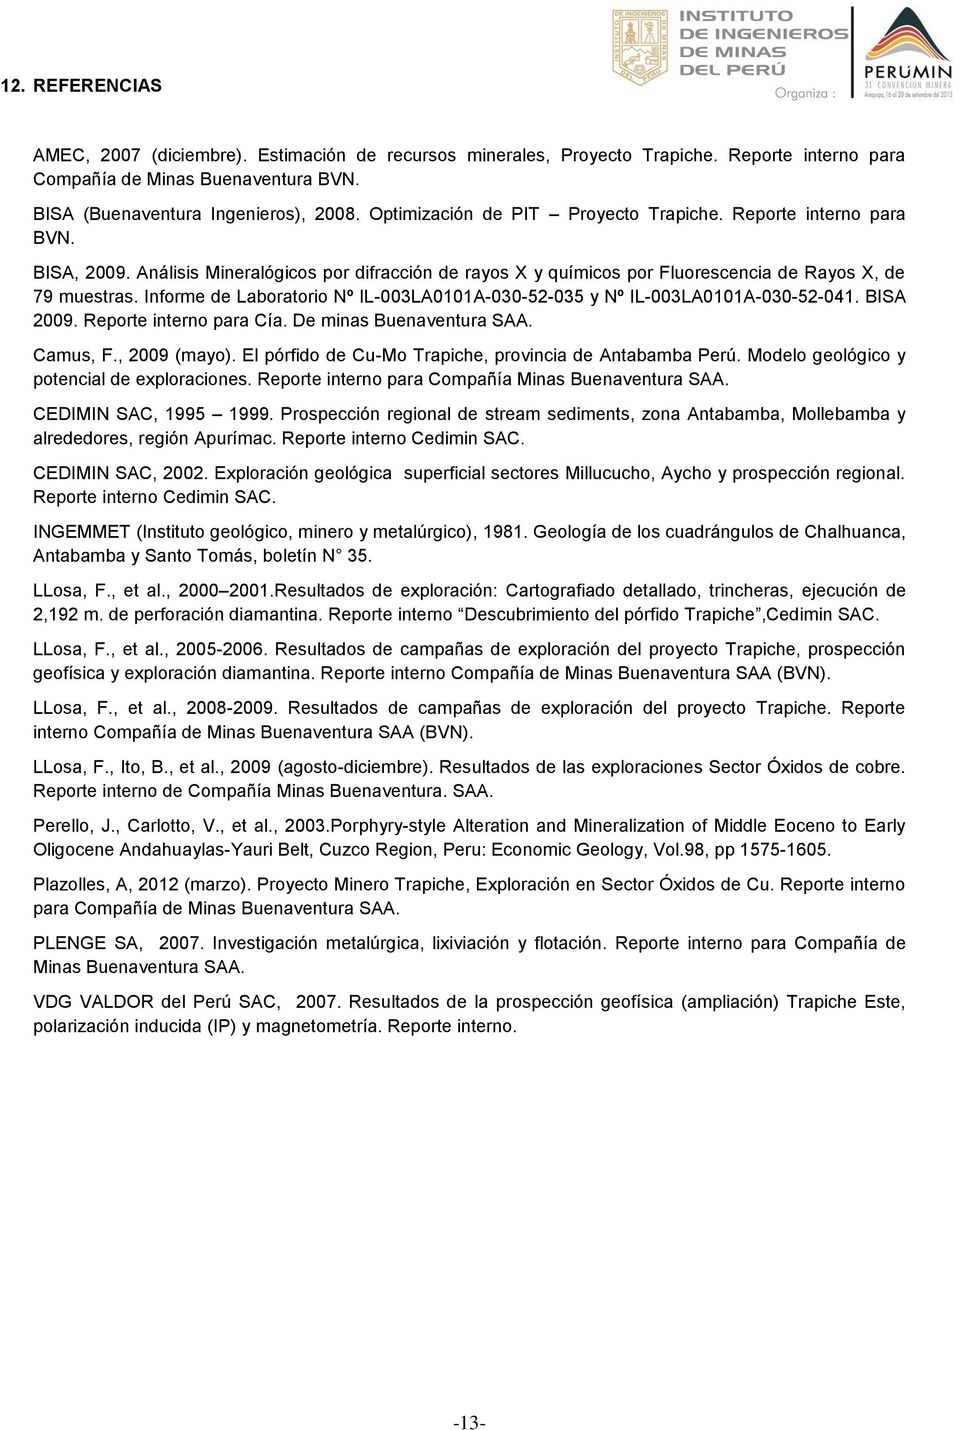 Informe de Laboratorio Nº IL-003LA0101A-030-52-035 y Nº IL-003LA0101A-030-52-041. BISA 2009. Reporte interno para Cía. De minas Buenaventura SAA. Camus, F., 2009 (mayo).